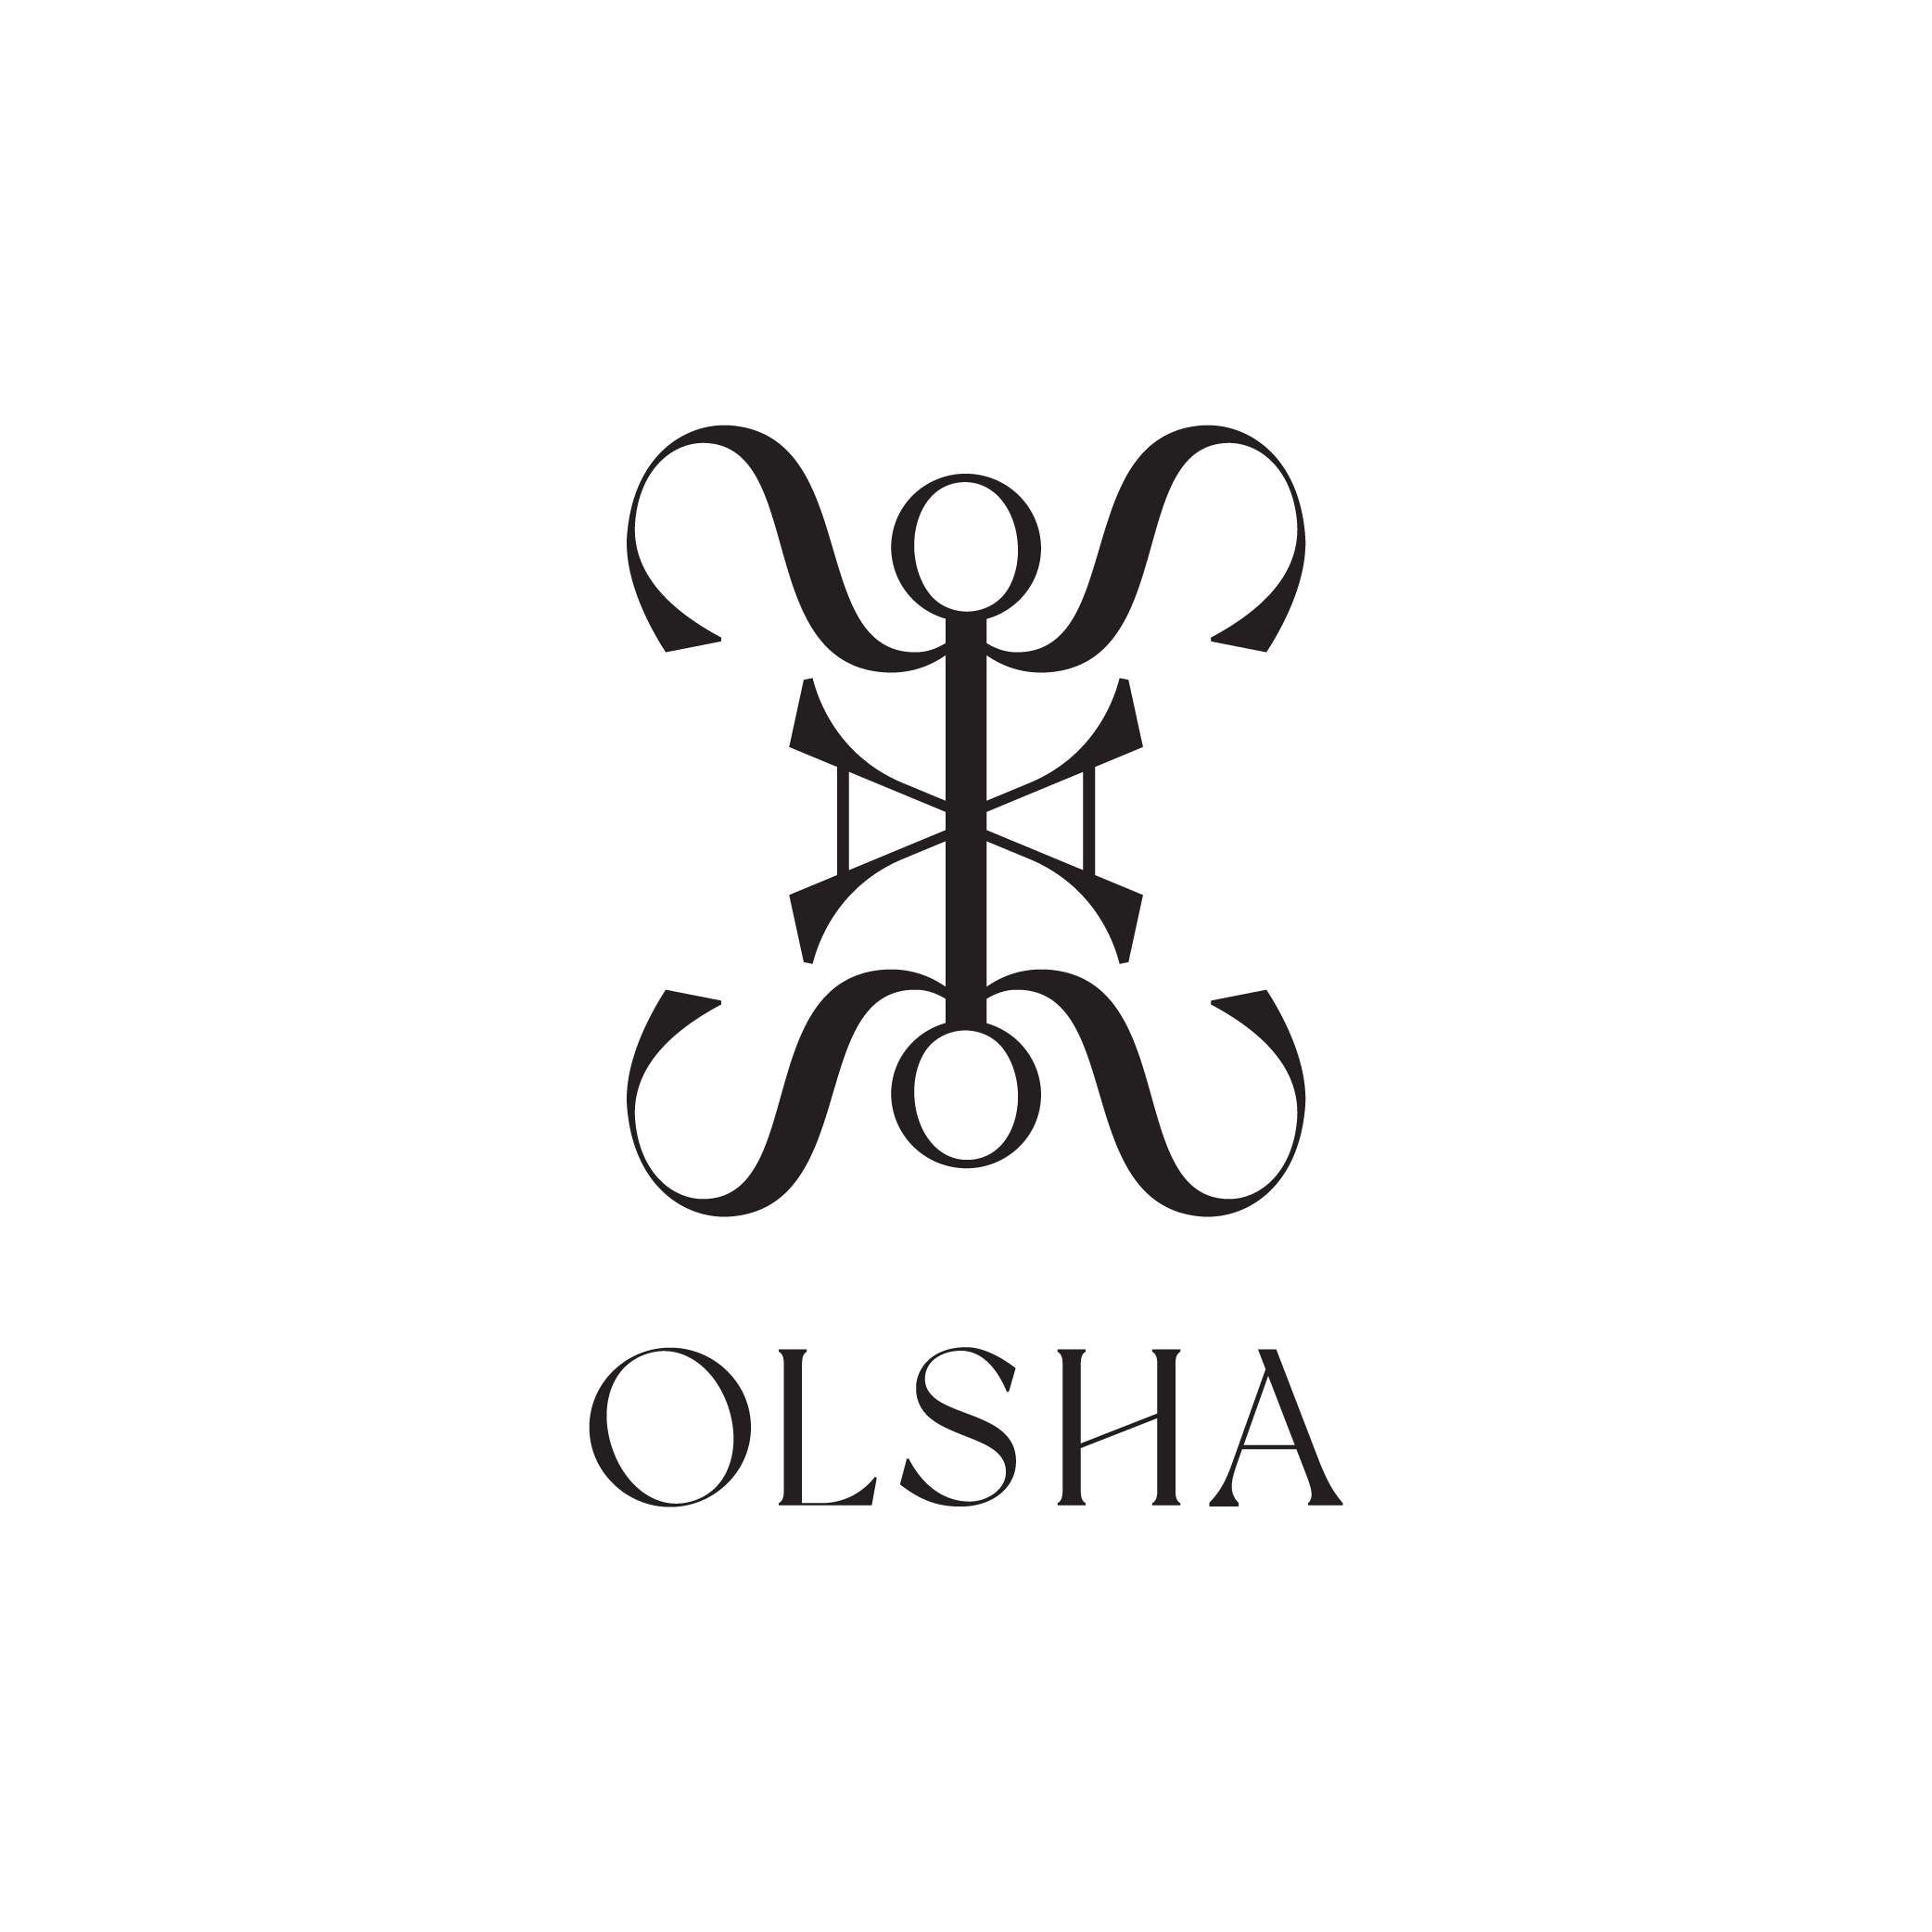 House of Olsha